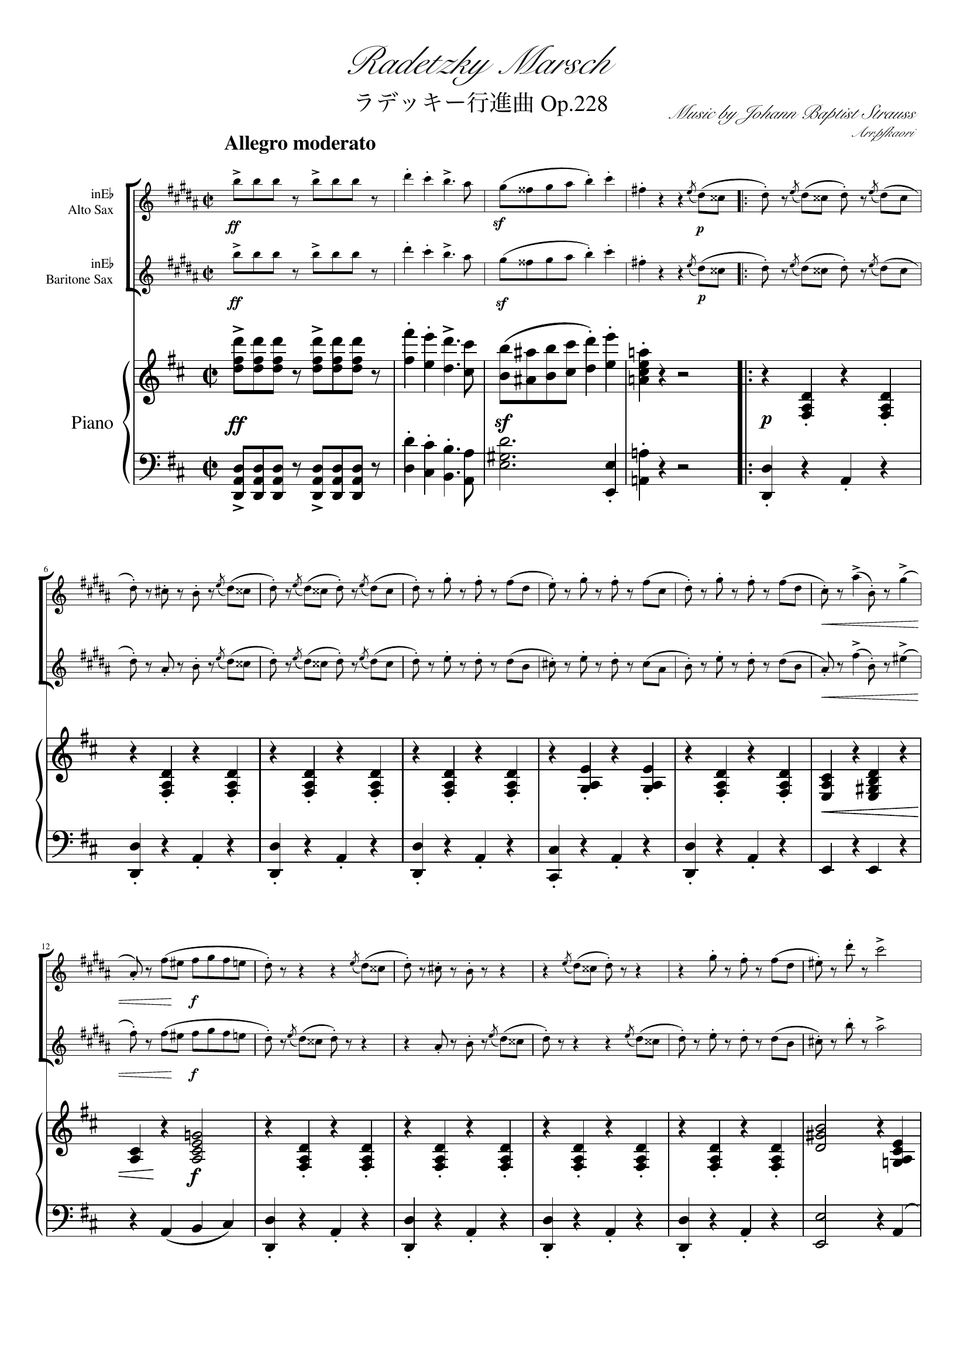 ヨハンシュトラウス1世 - ラデッキー行進曲 (D・ピアノトリオ/アルトサックス&バリトンサックス) by pfkaori